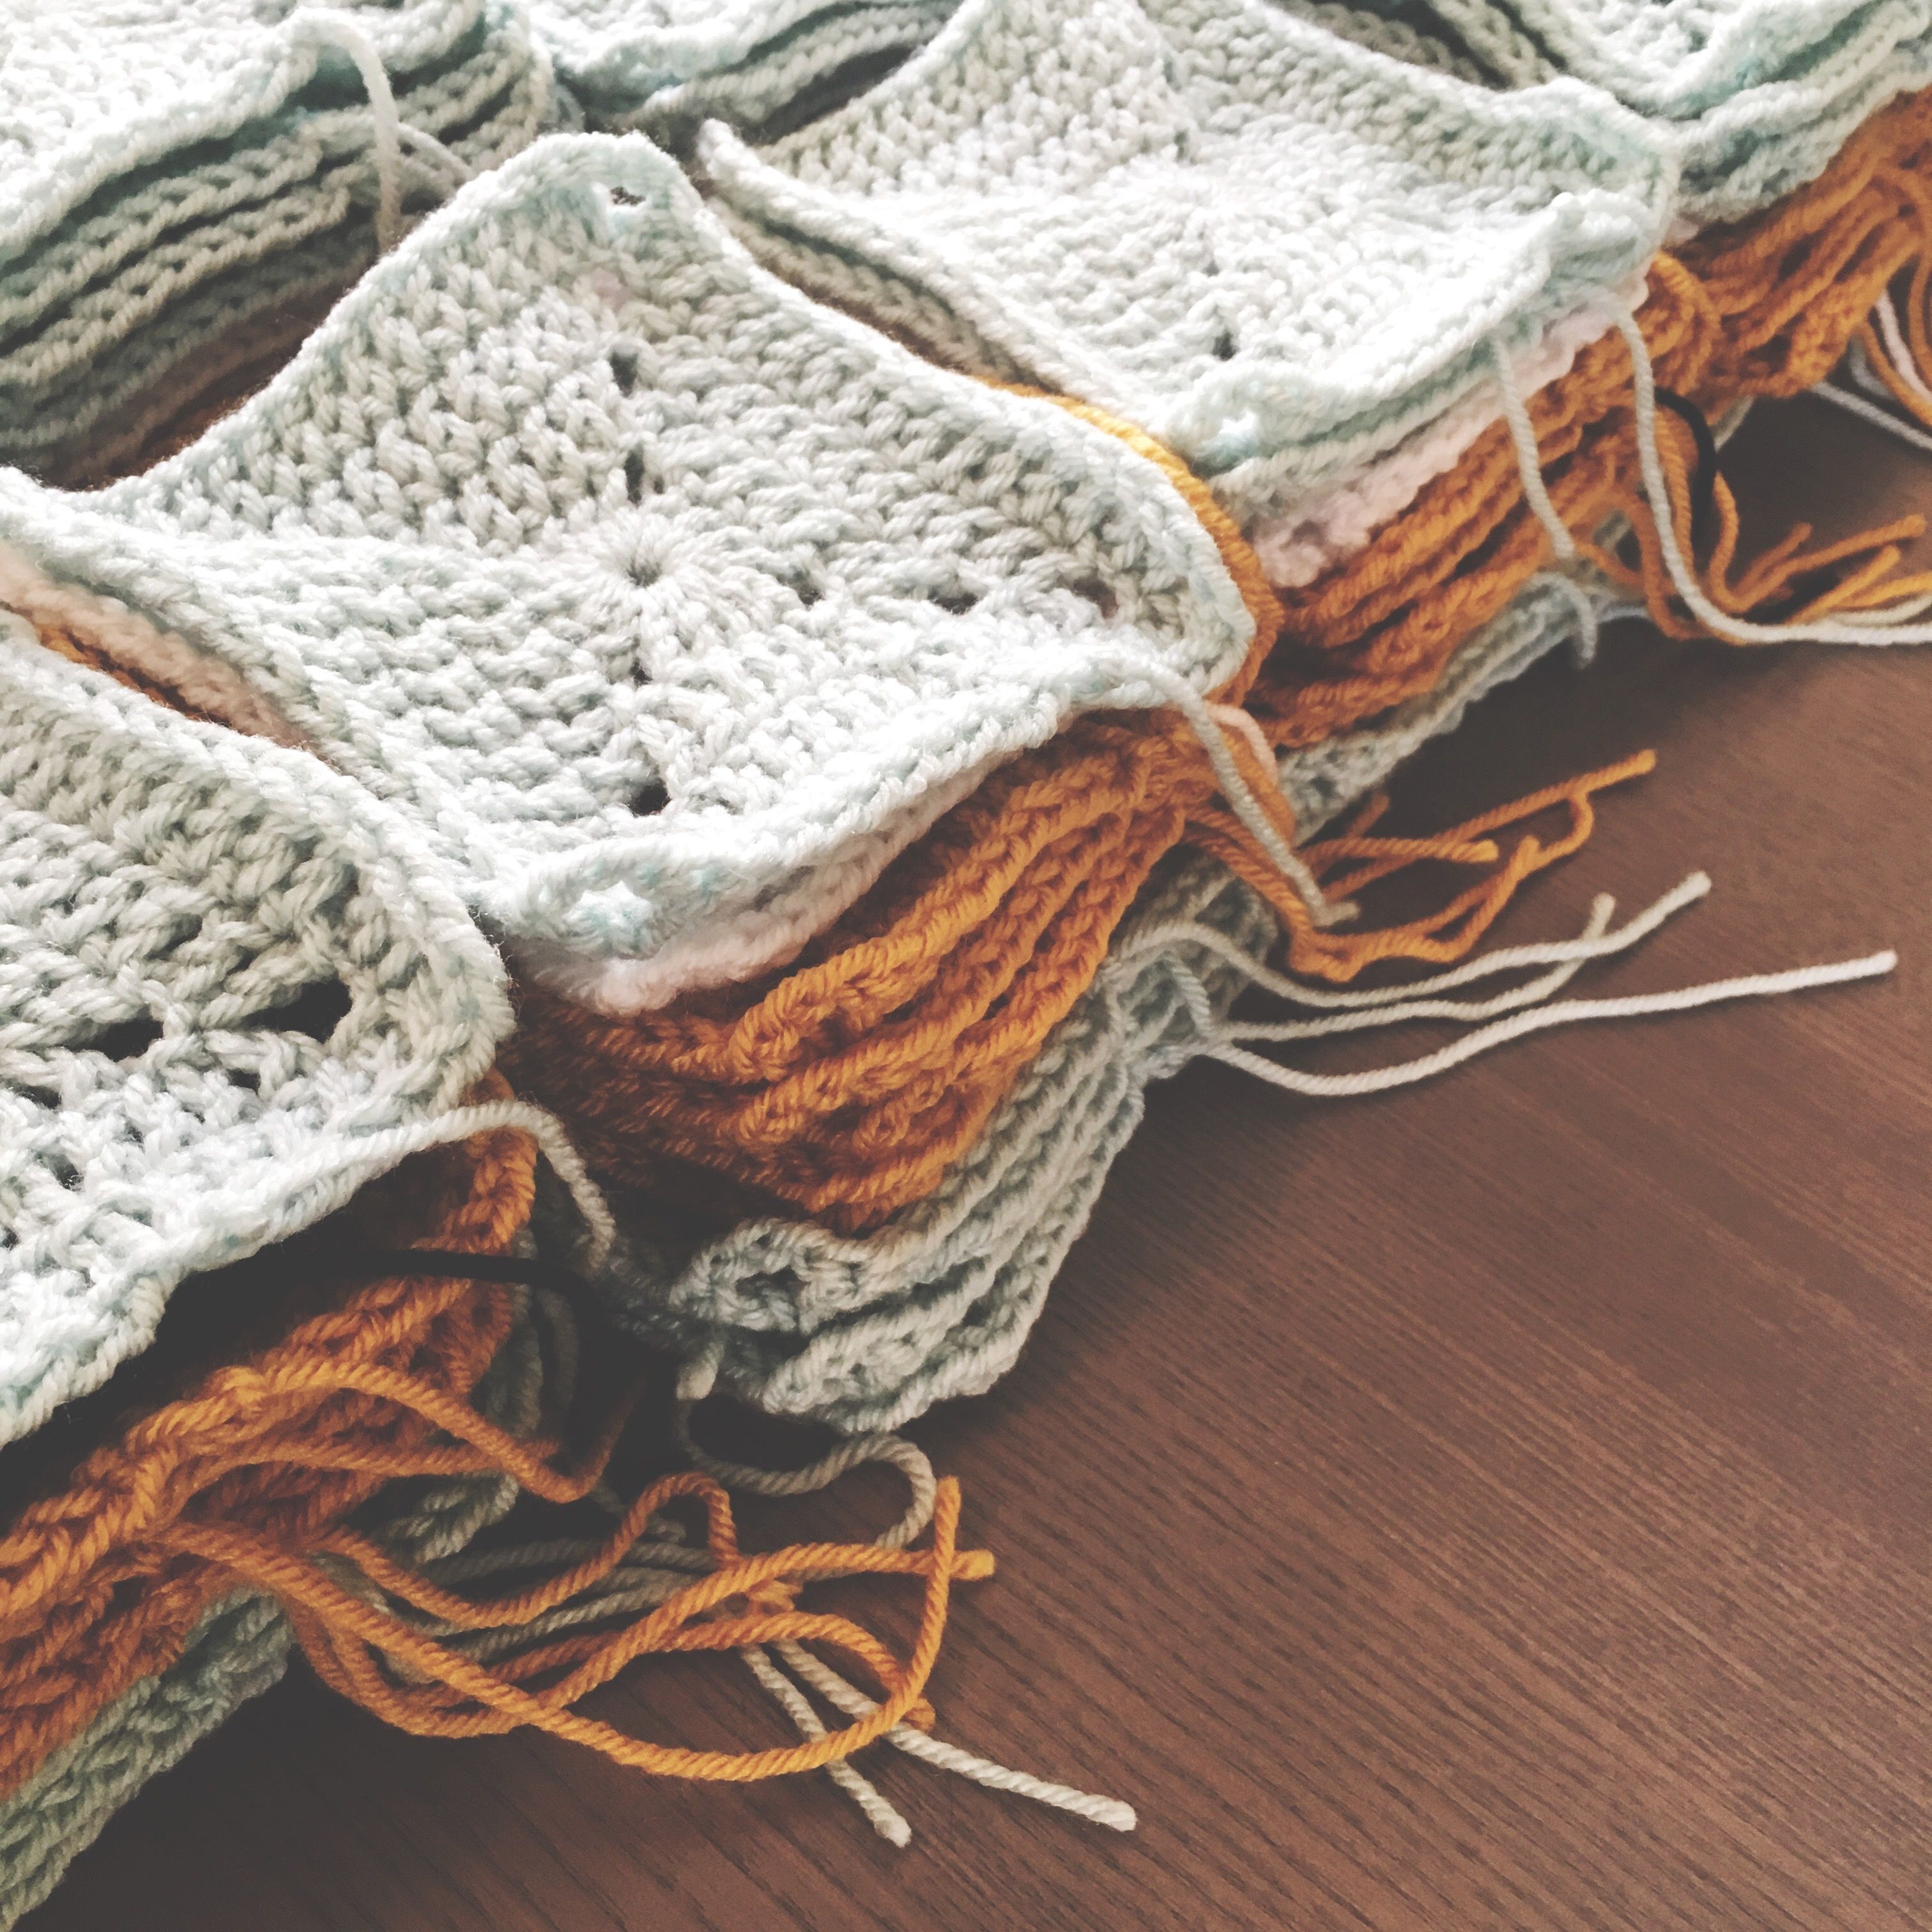 Easy Crochet Patterns For Beginners Uk